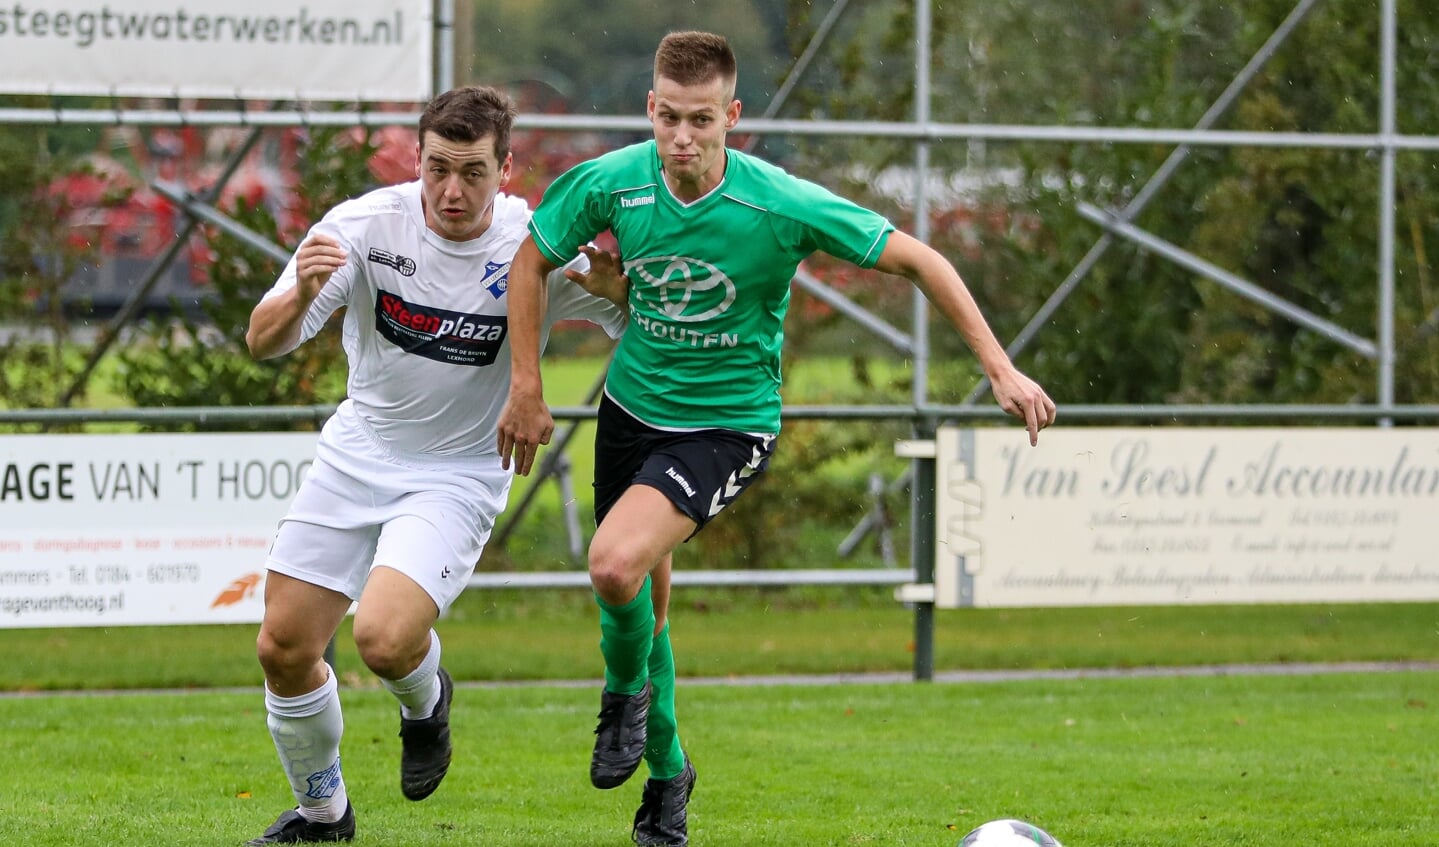 Lekvogels - SV Noordeloos (2-2).